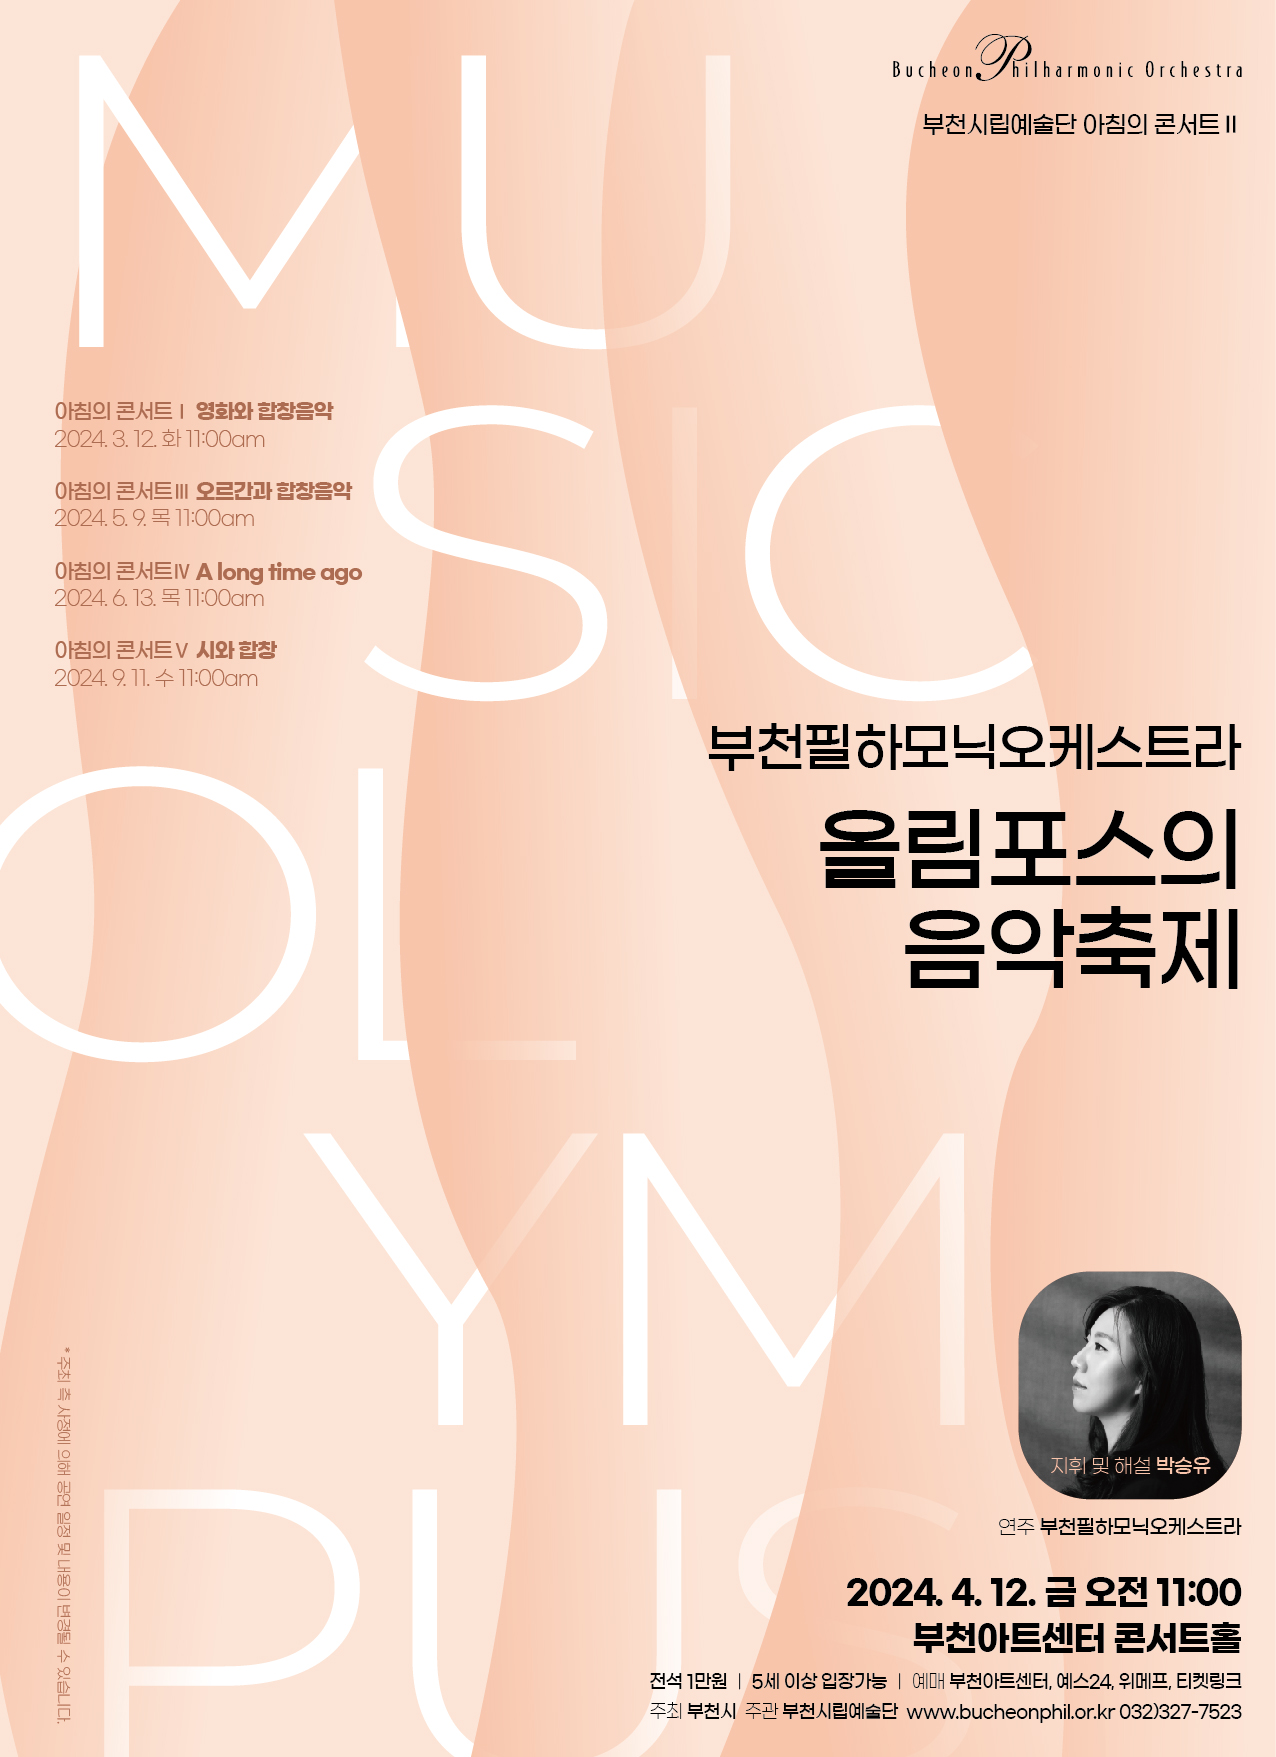 [4.12]부천필하모닉오케스트라 아침의 콘서트 '올림포스의 음악축제'